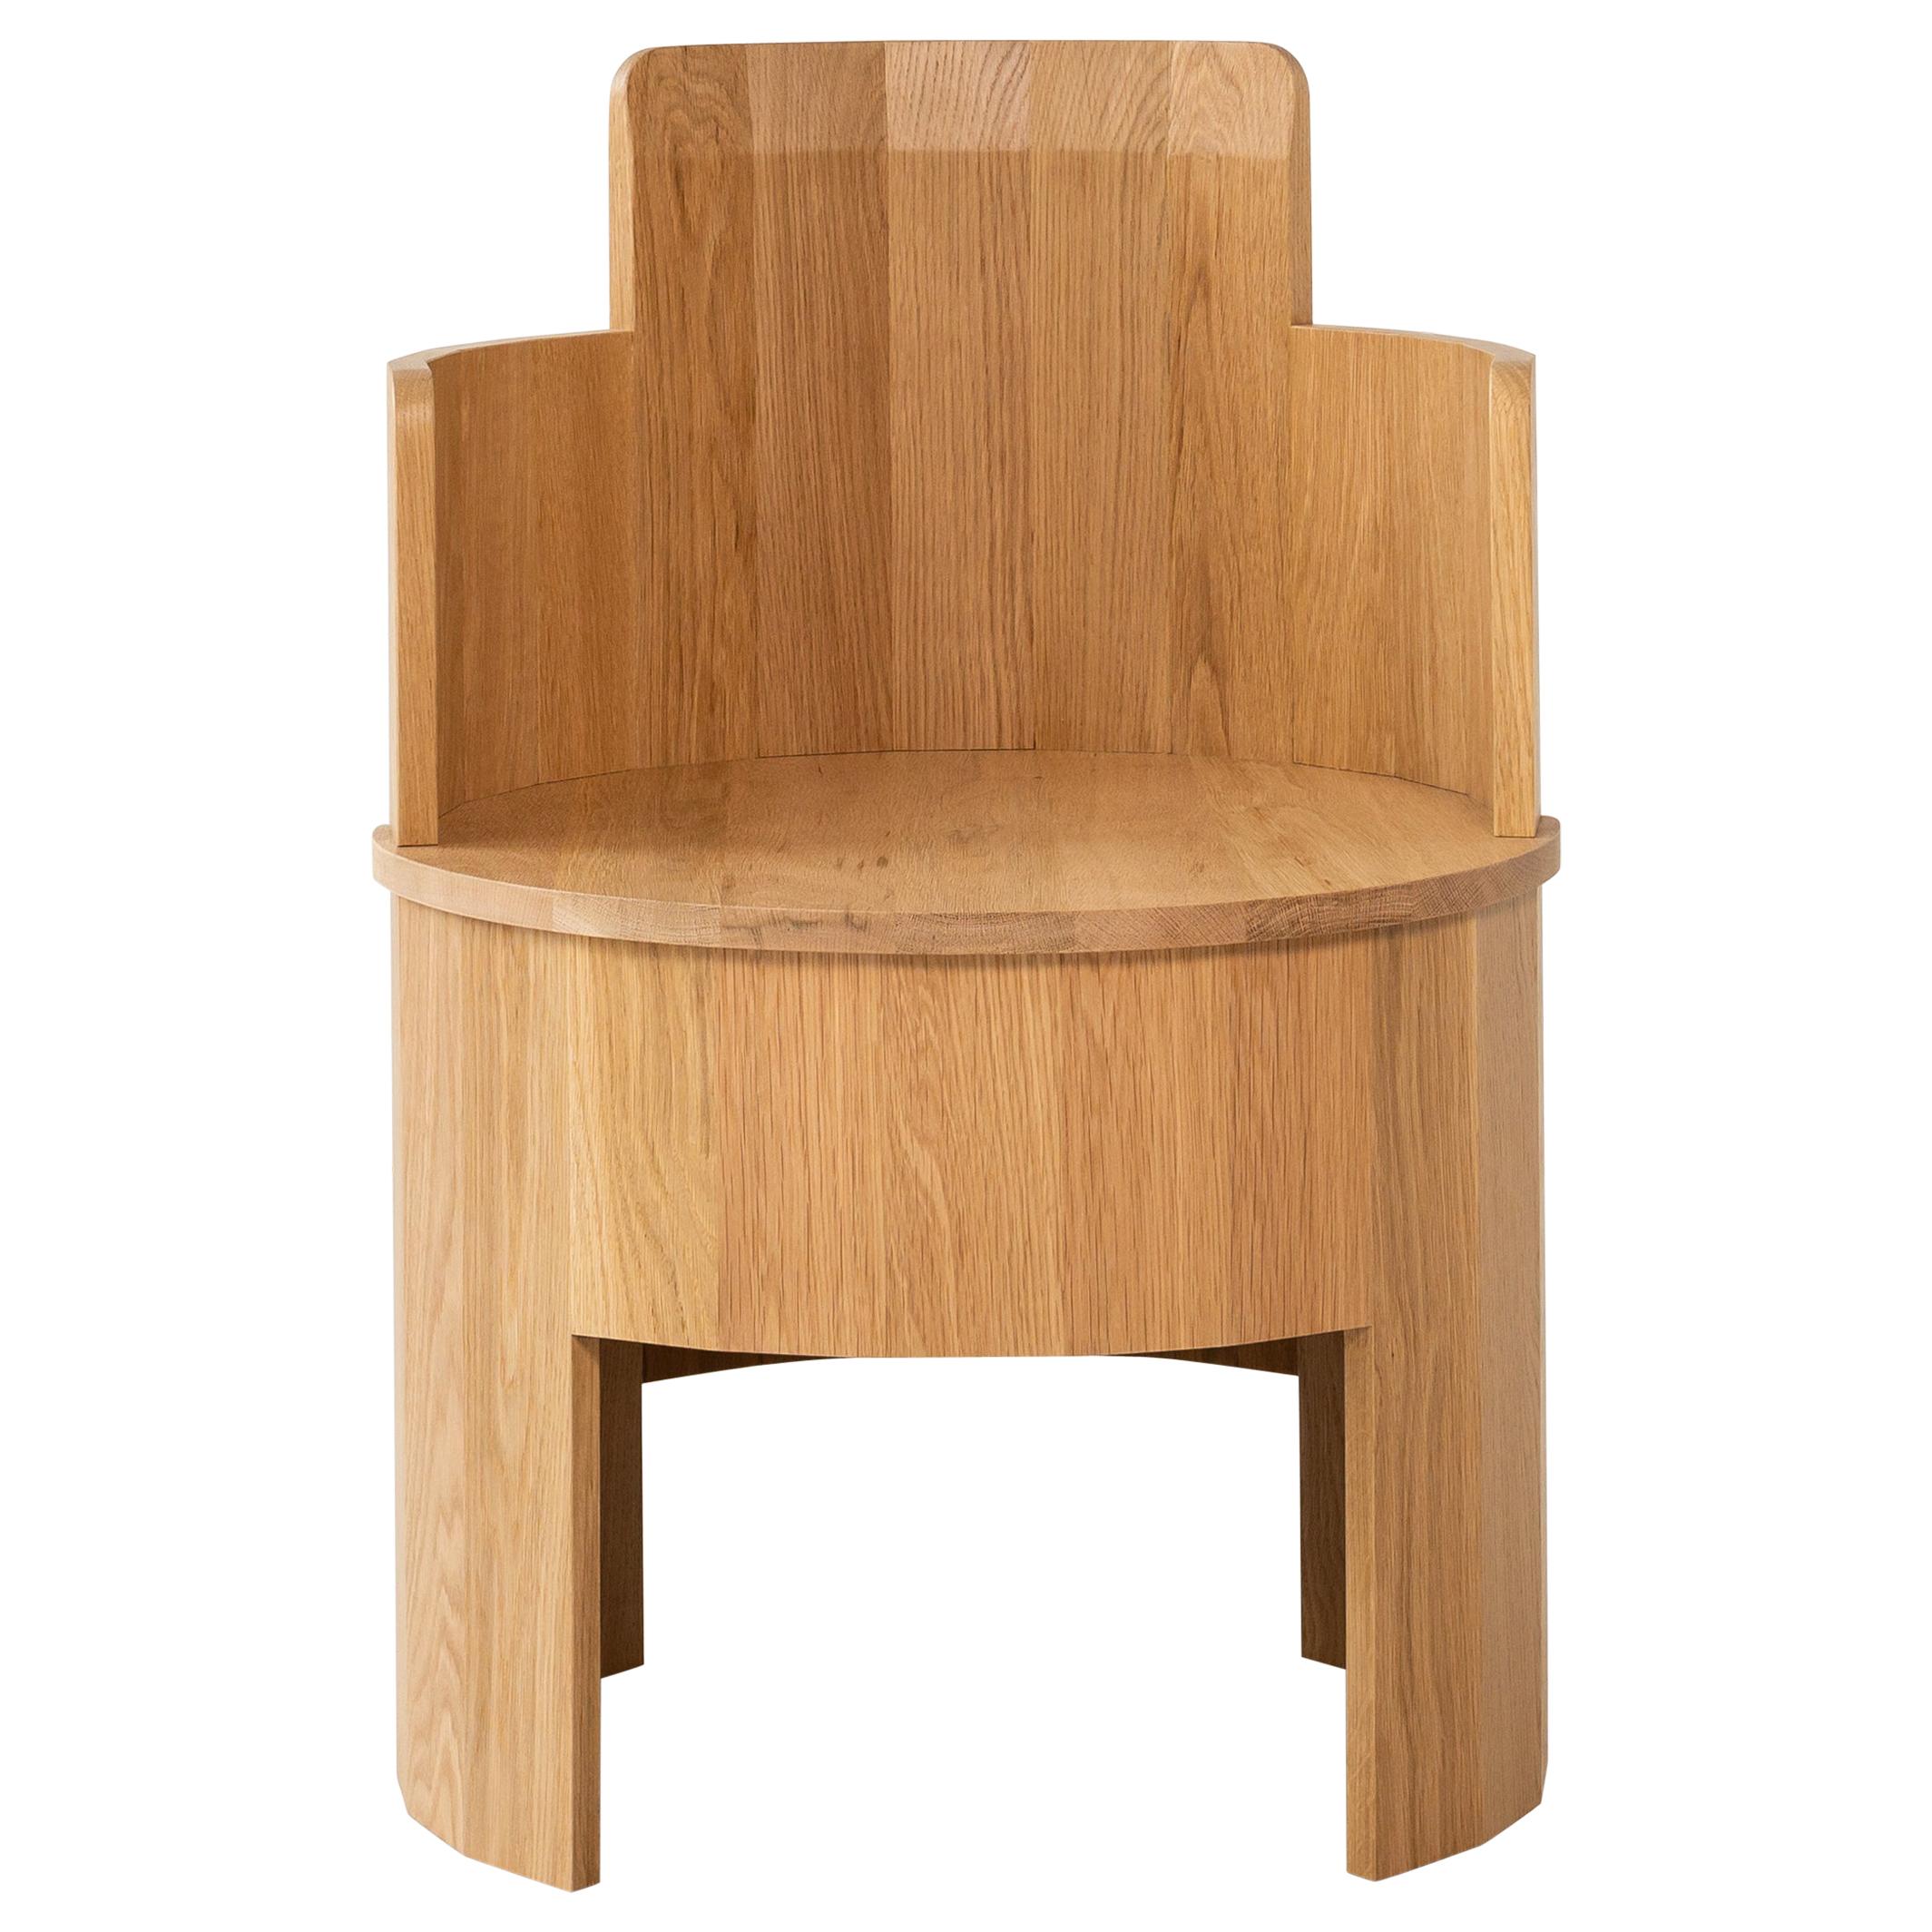 Chaise de coopération contemporaine en bois de chêne blanc par Fort Standard, en stock